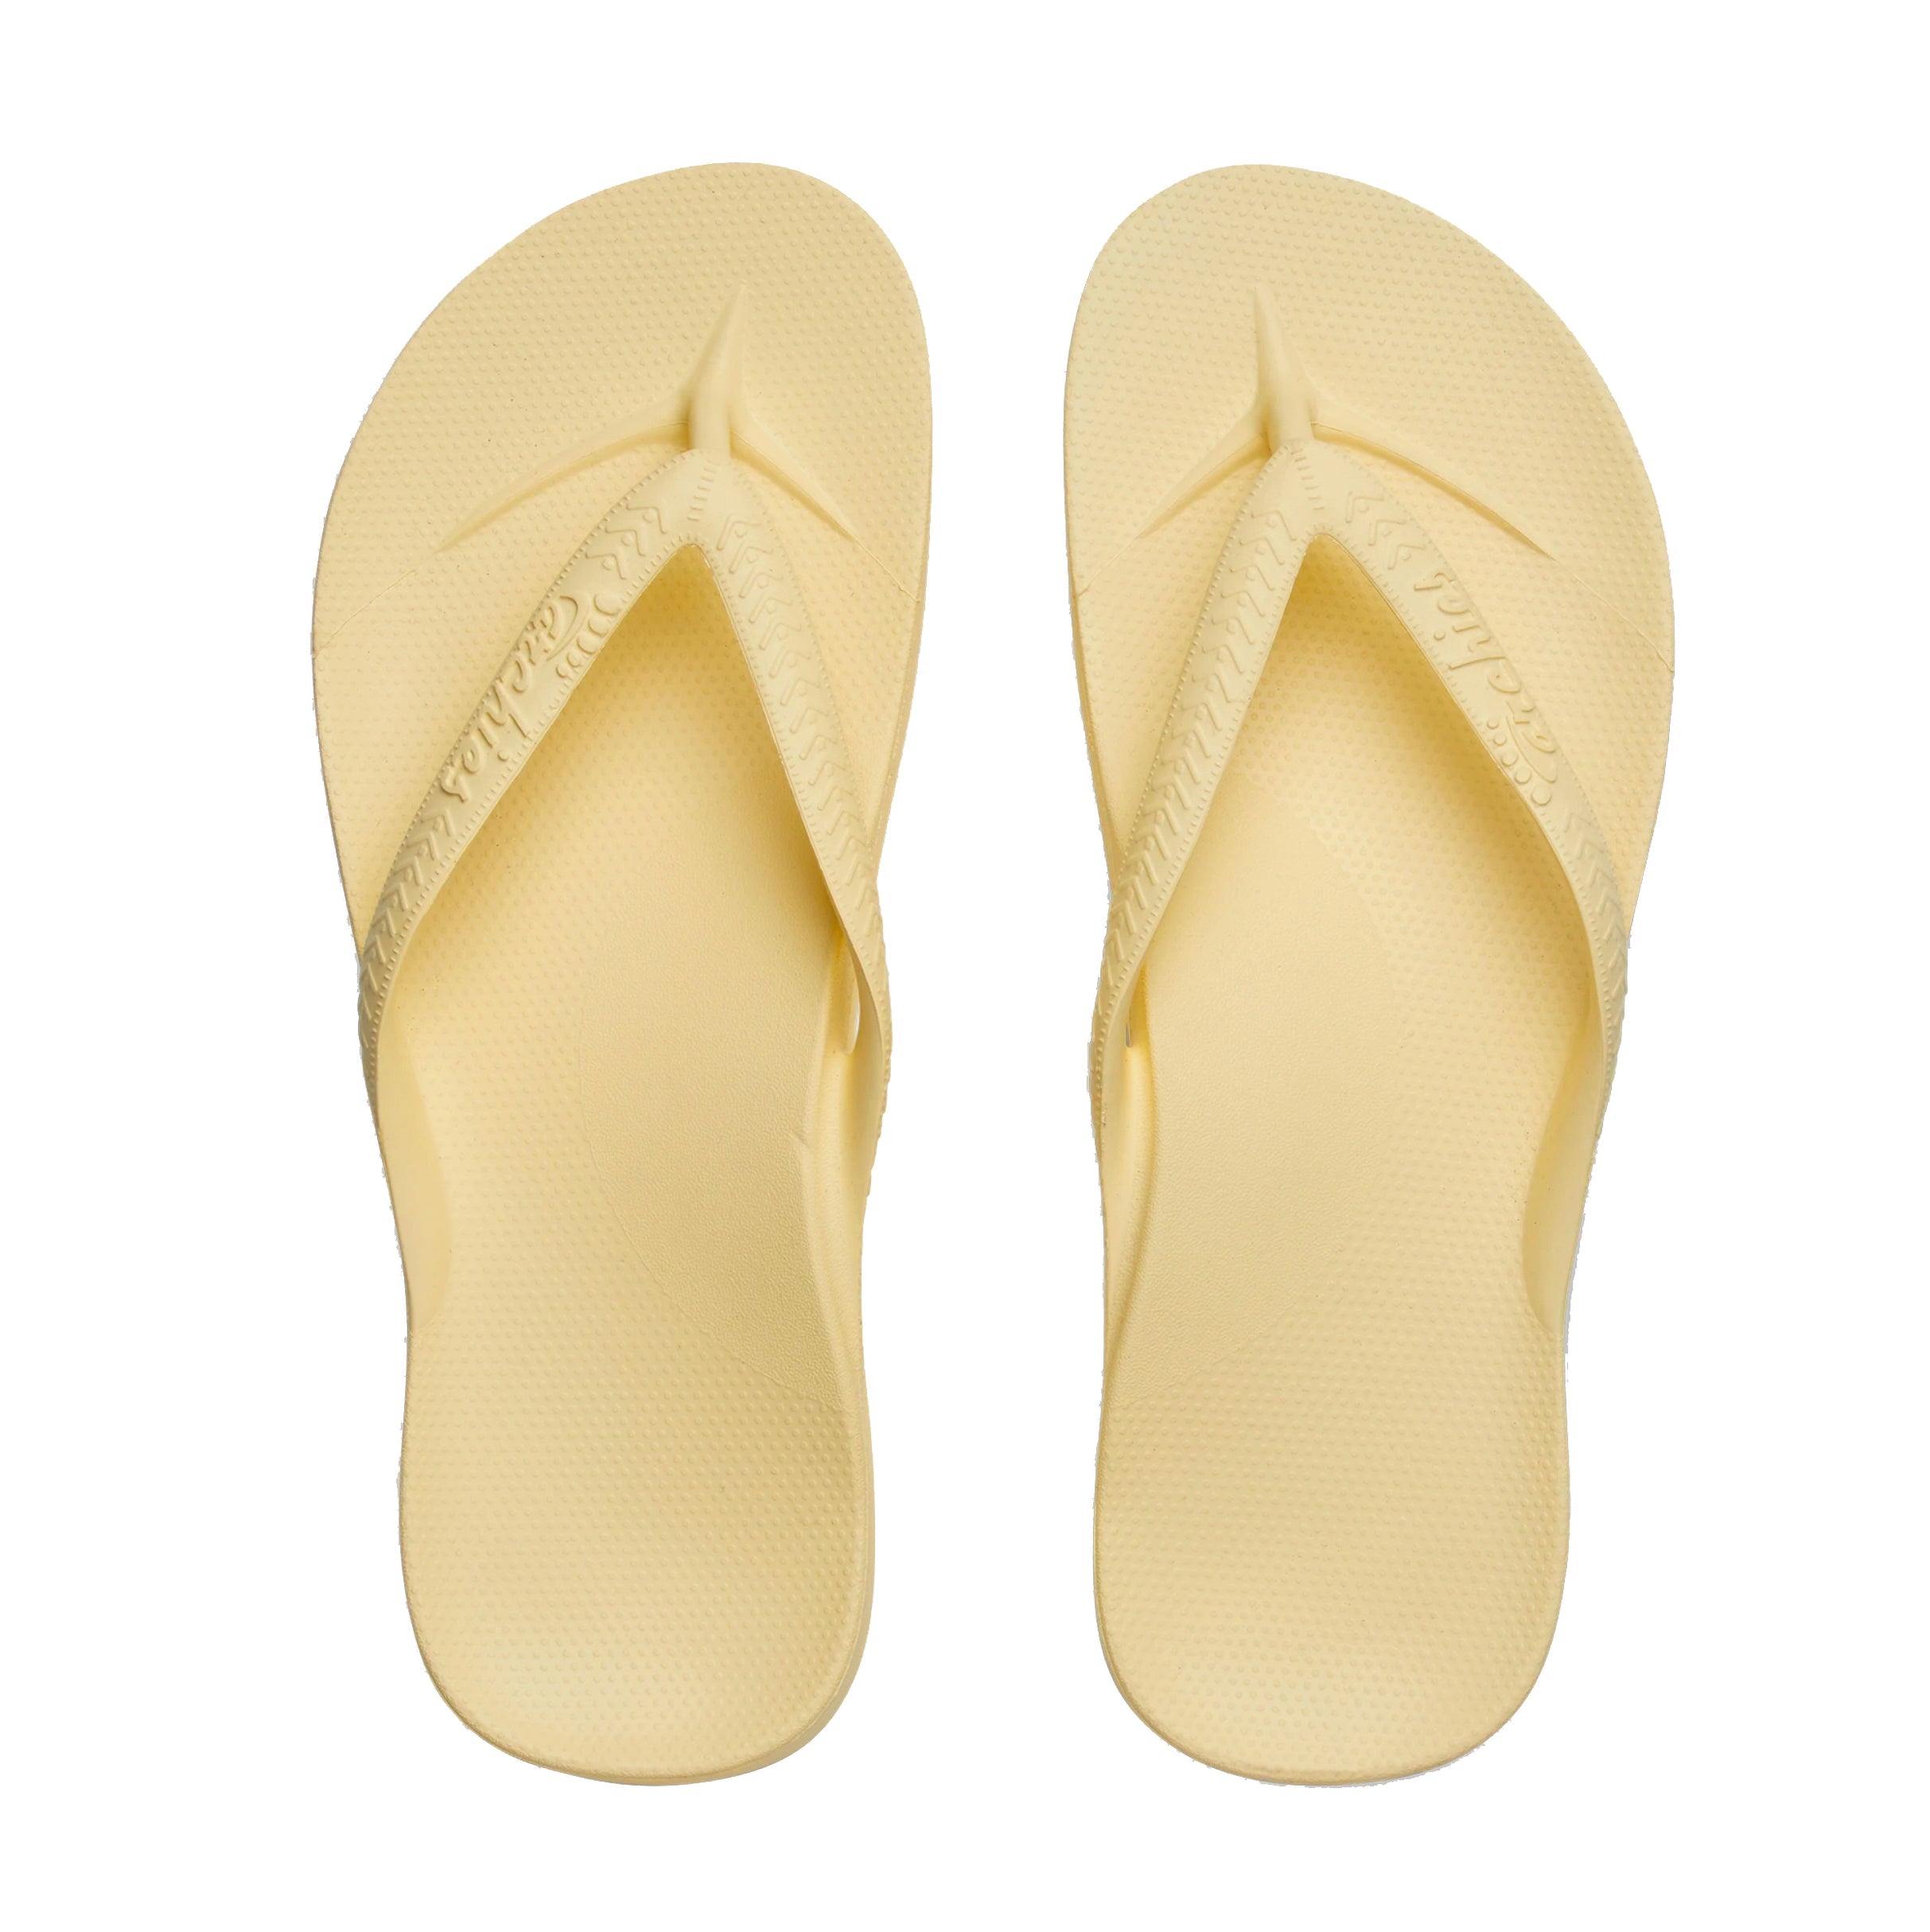 Archies Thongs Lemon – Noosa Footwear Co.